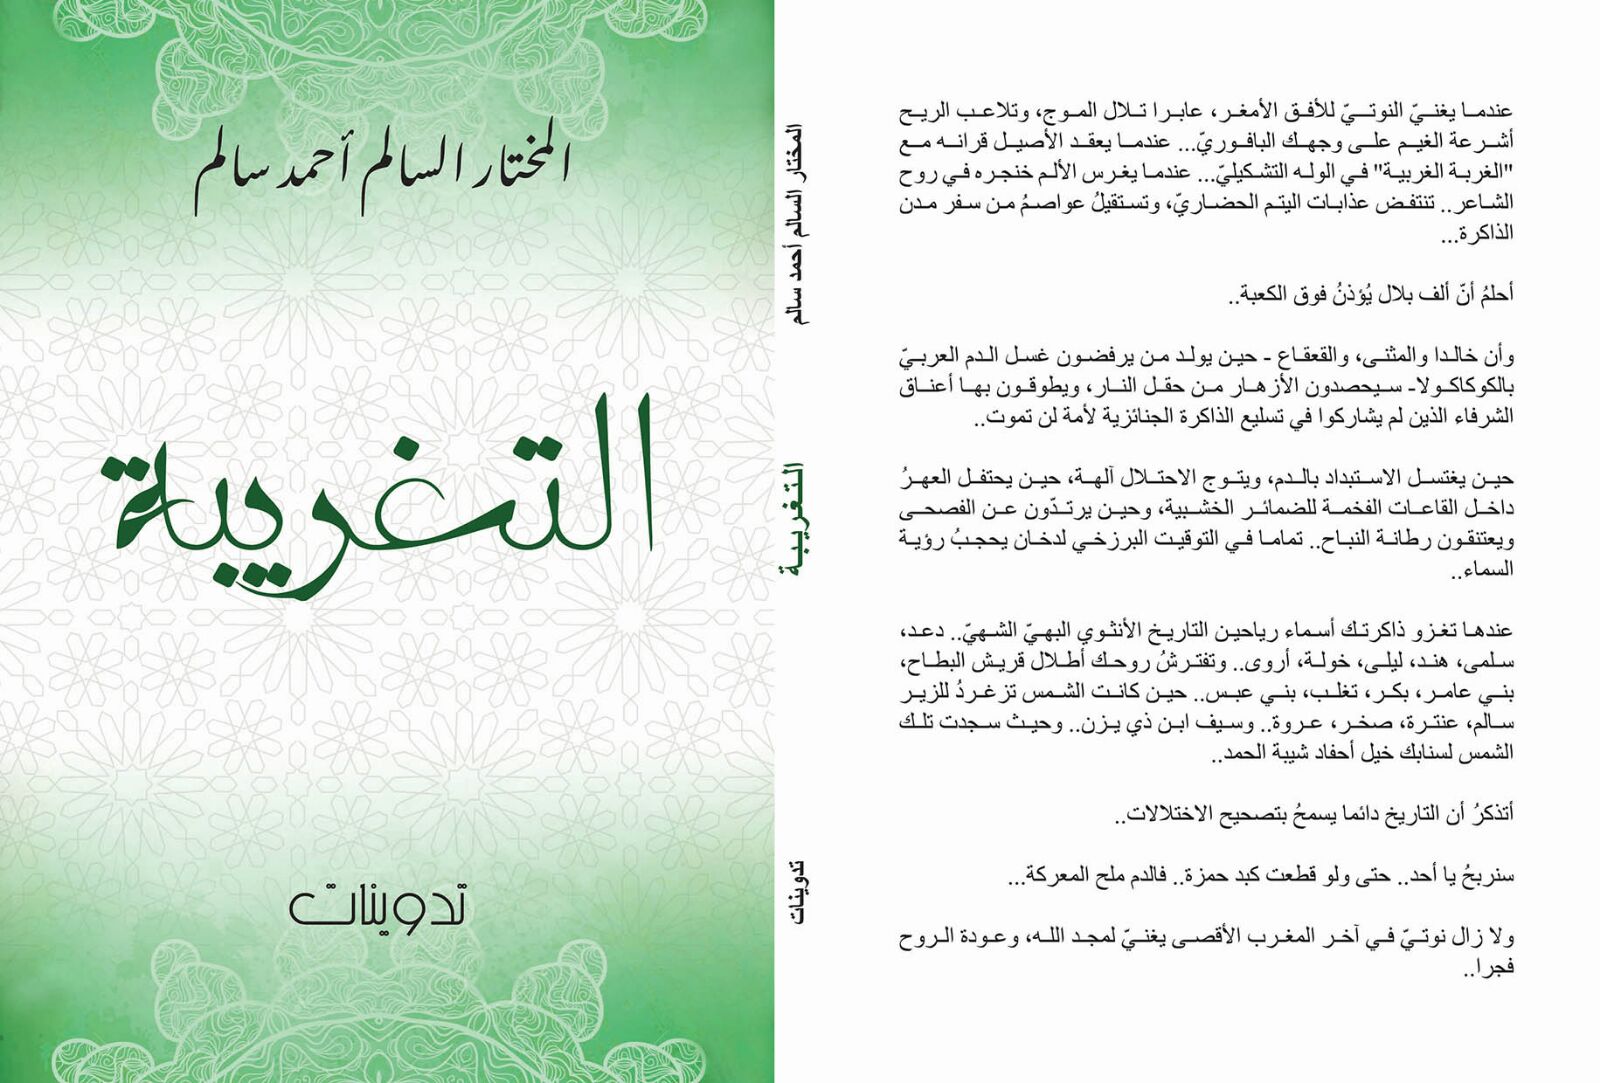 غلاف كتاب "التغريبة" للشاعر والروائي الموريتاني المختار السالم